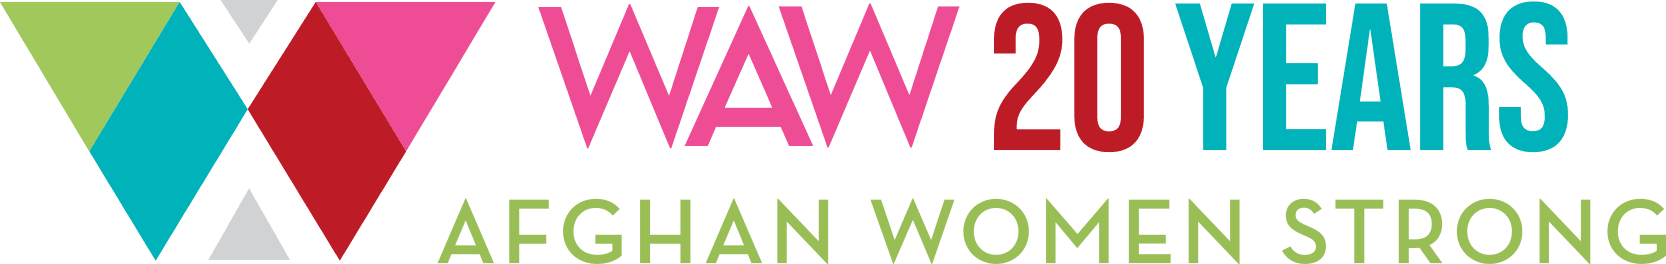 WAW-CharityAuction 横幅